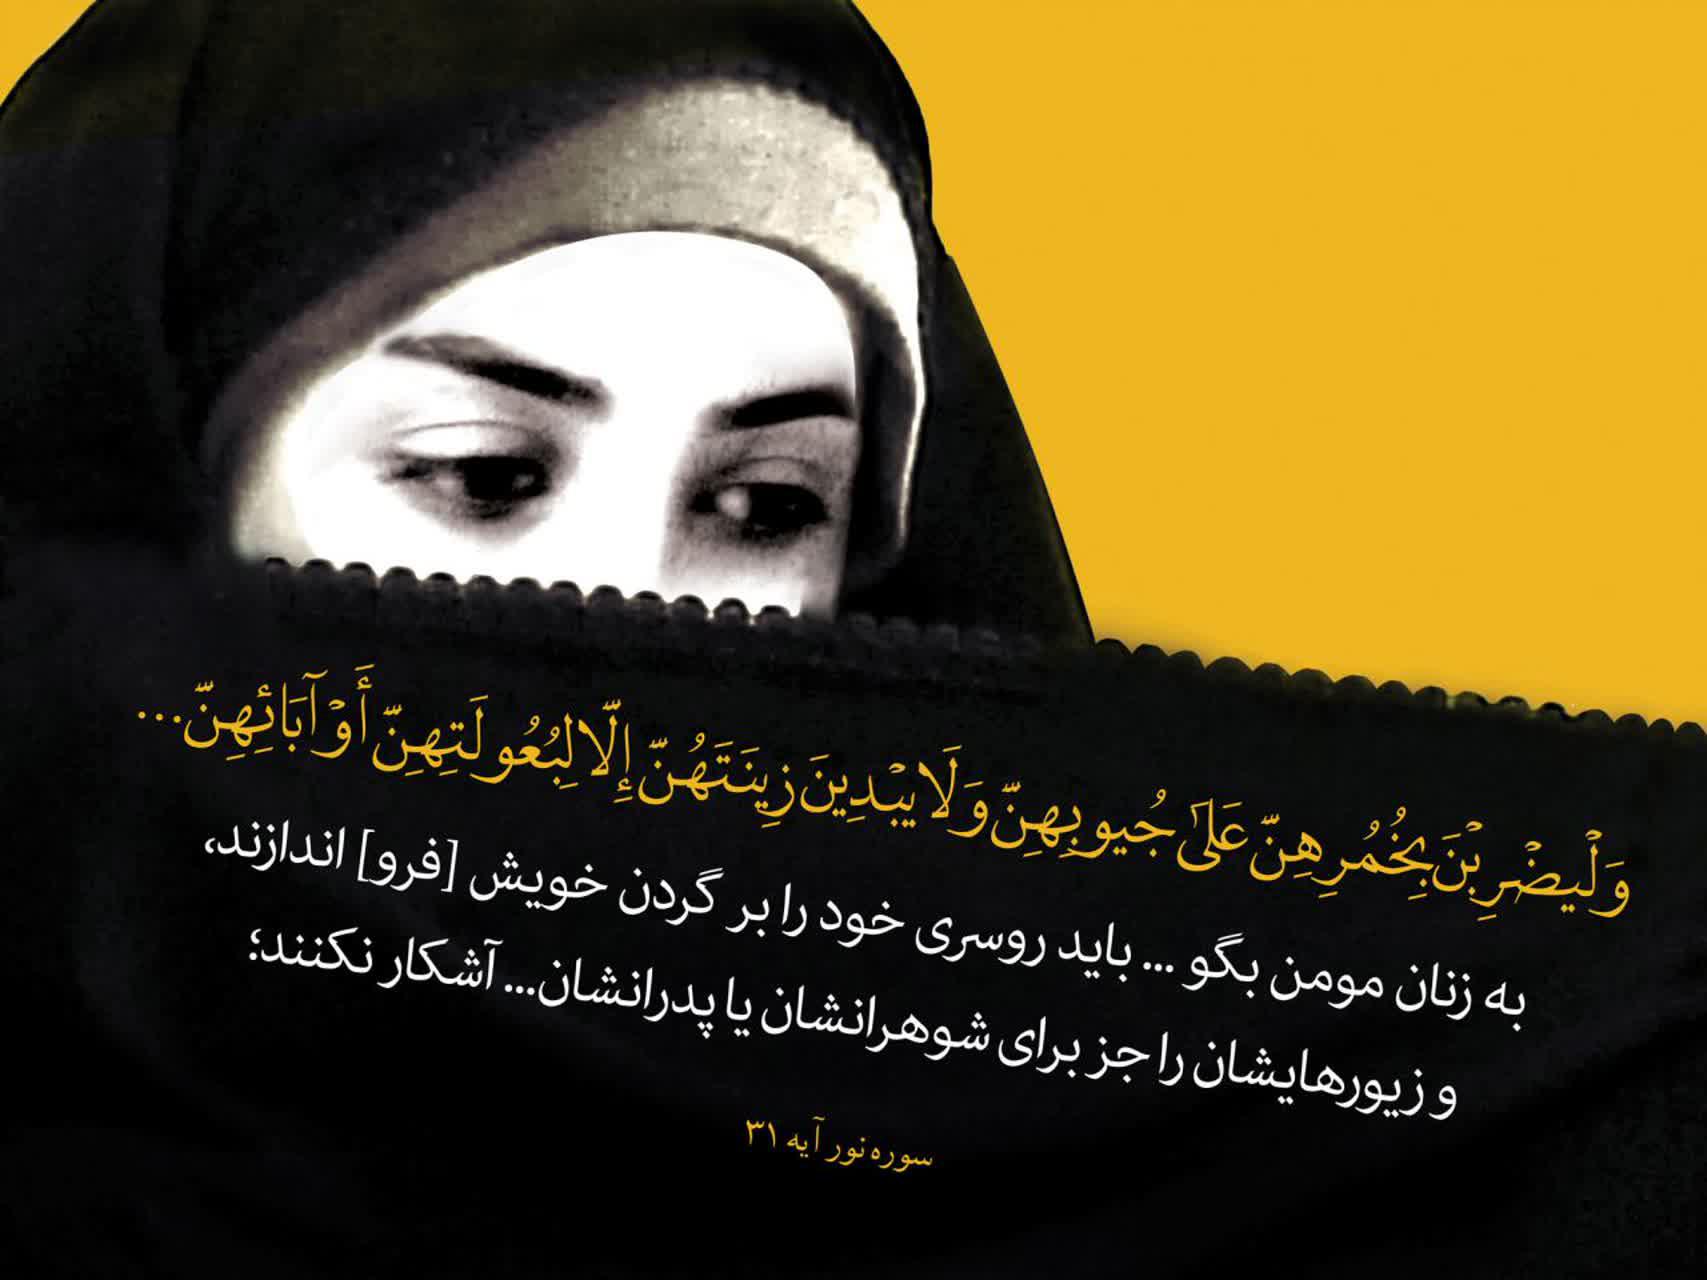 حجاب کامل دستور حجاب در کجای قرآن آمده است؟